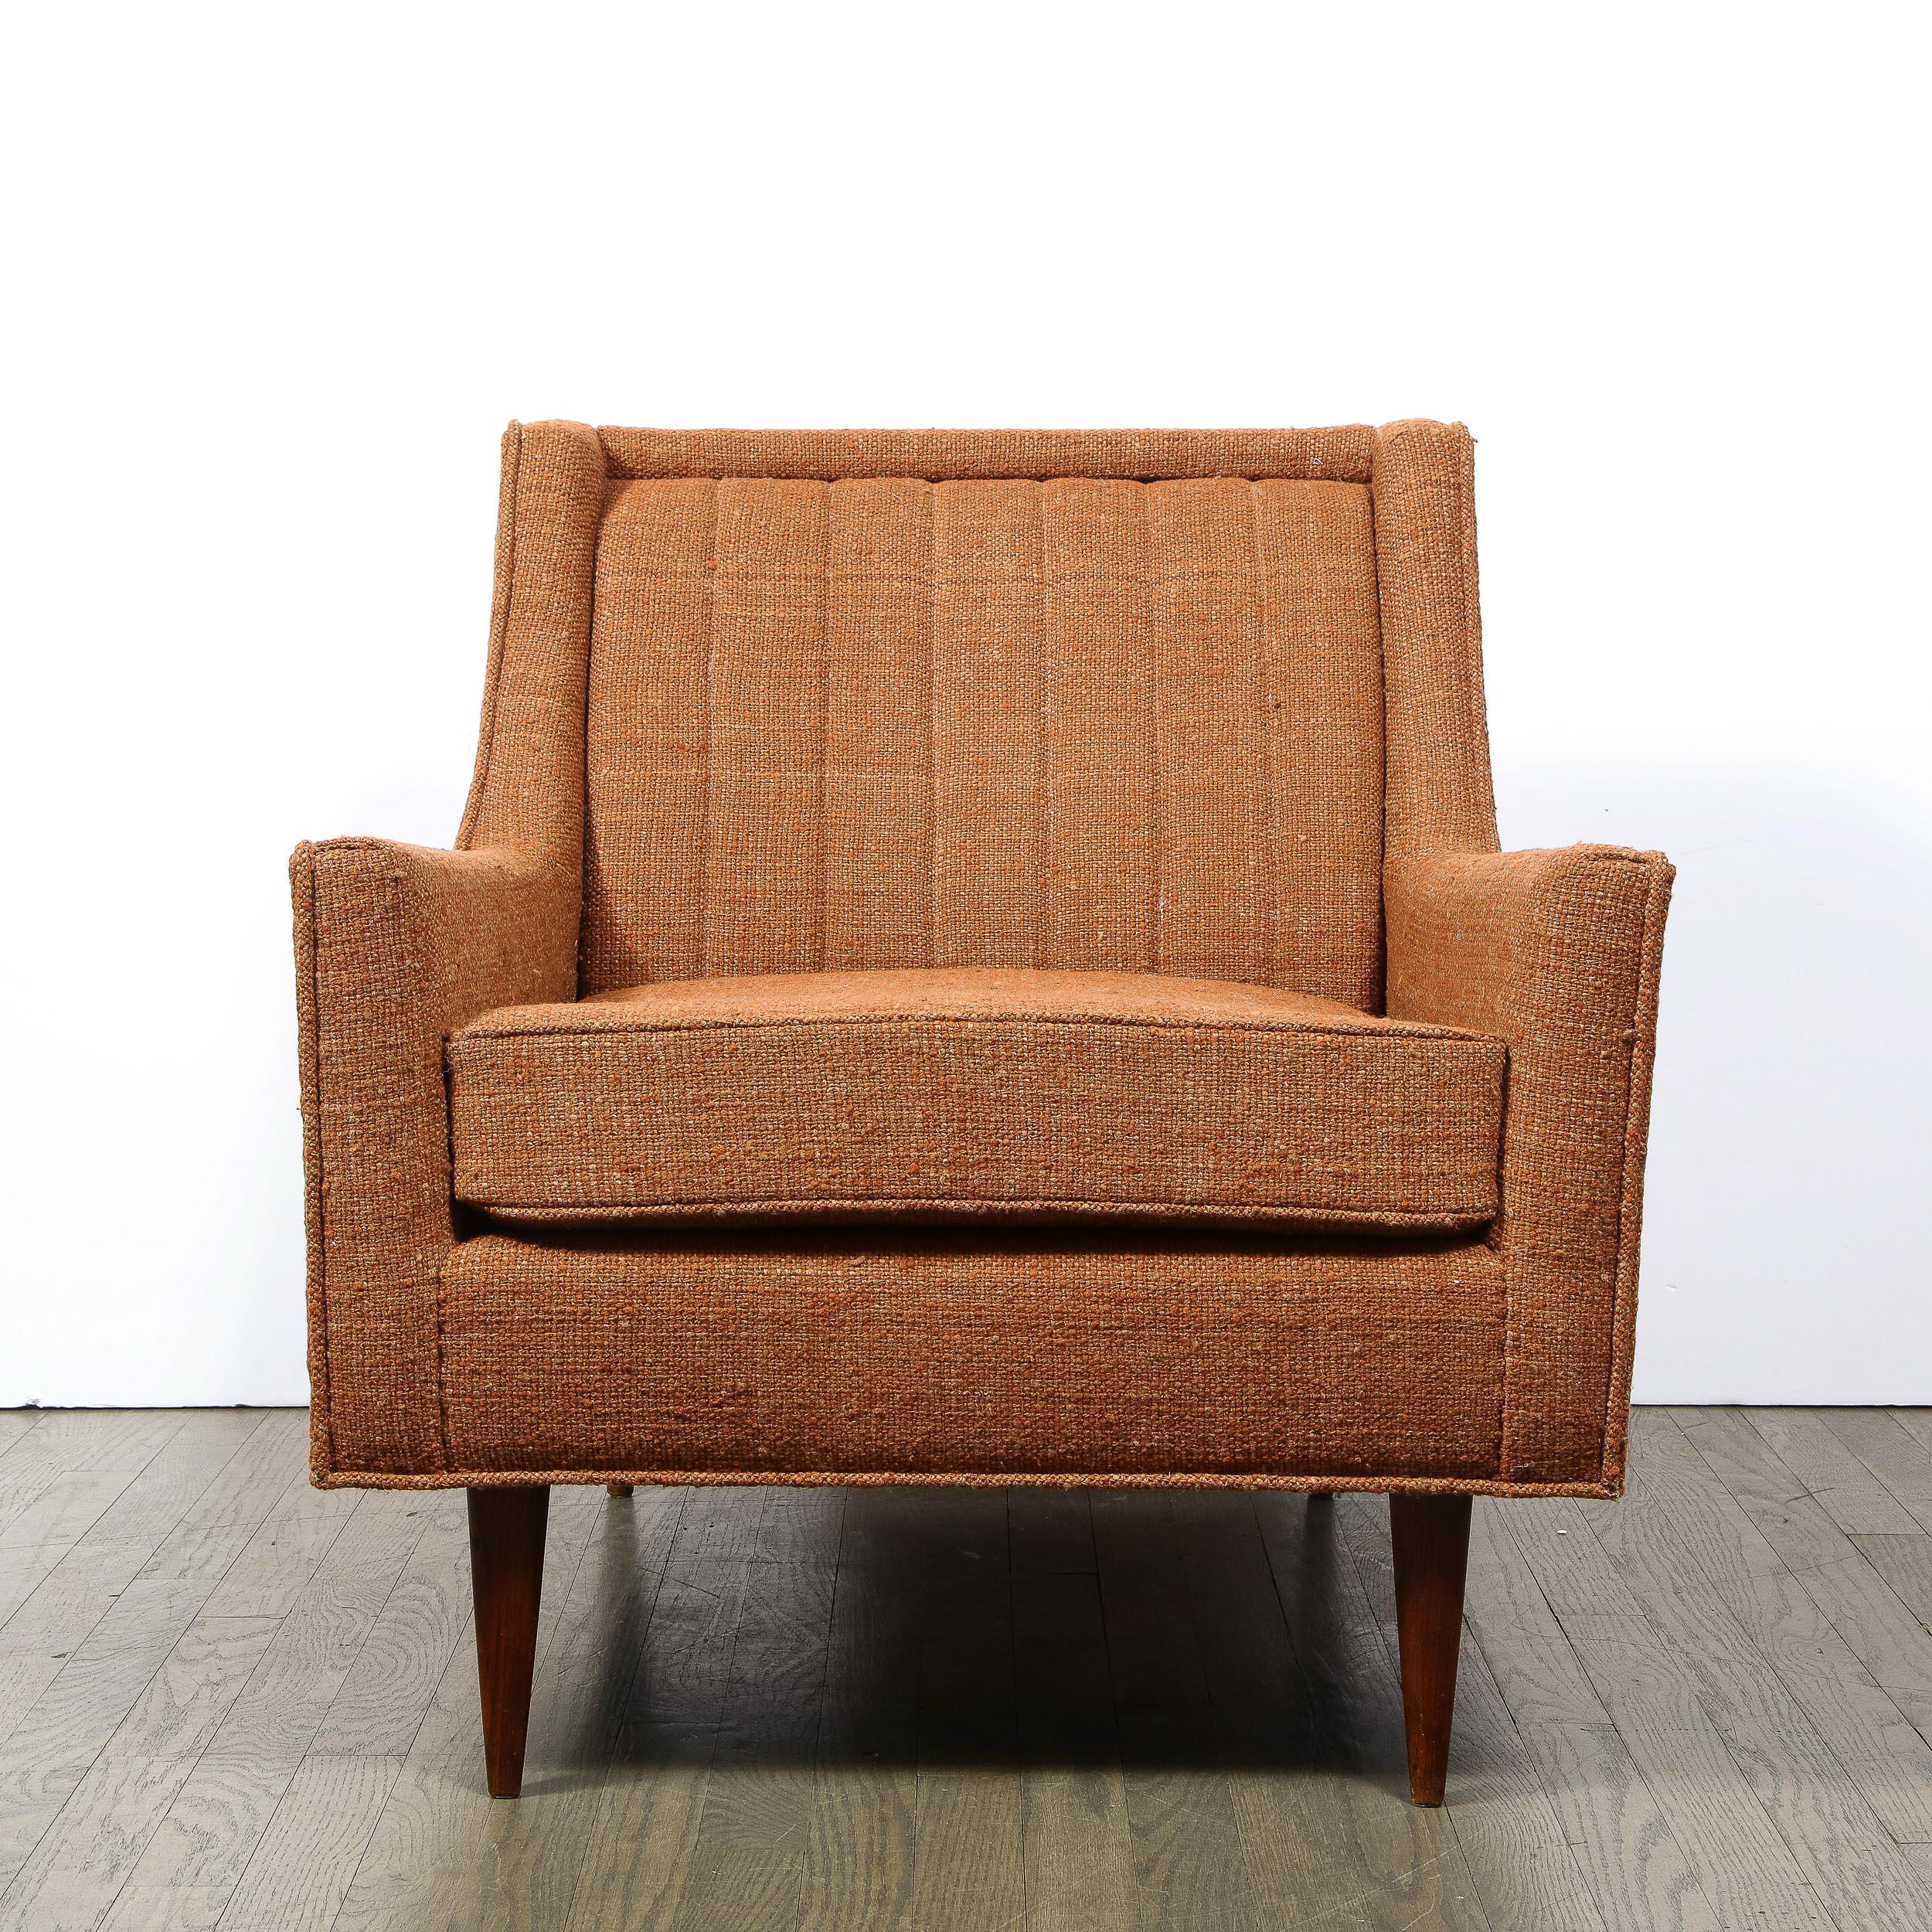 Ce fauteuil raffiné de style Mid-Century Modern a été réalisé aux États-Unis vers 1950. Posé sur des pieds coniques, ce meuble présente une multitude de détails superbes, notamment des canaux sur son dossier subtilement ombragé et des angles